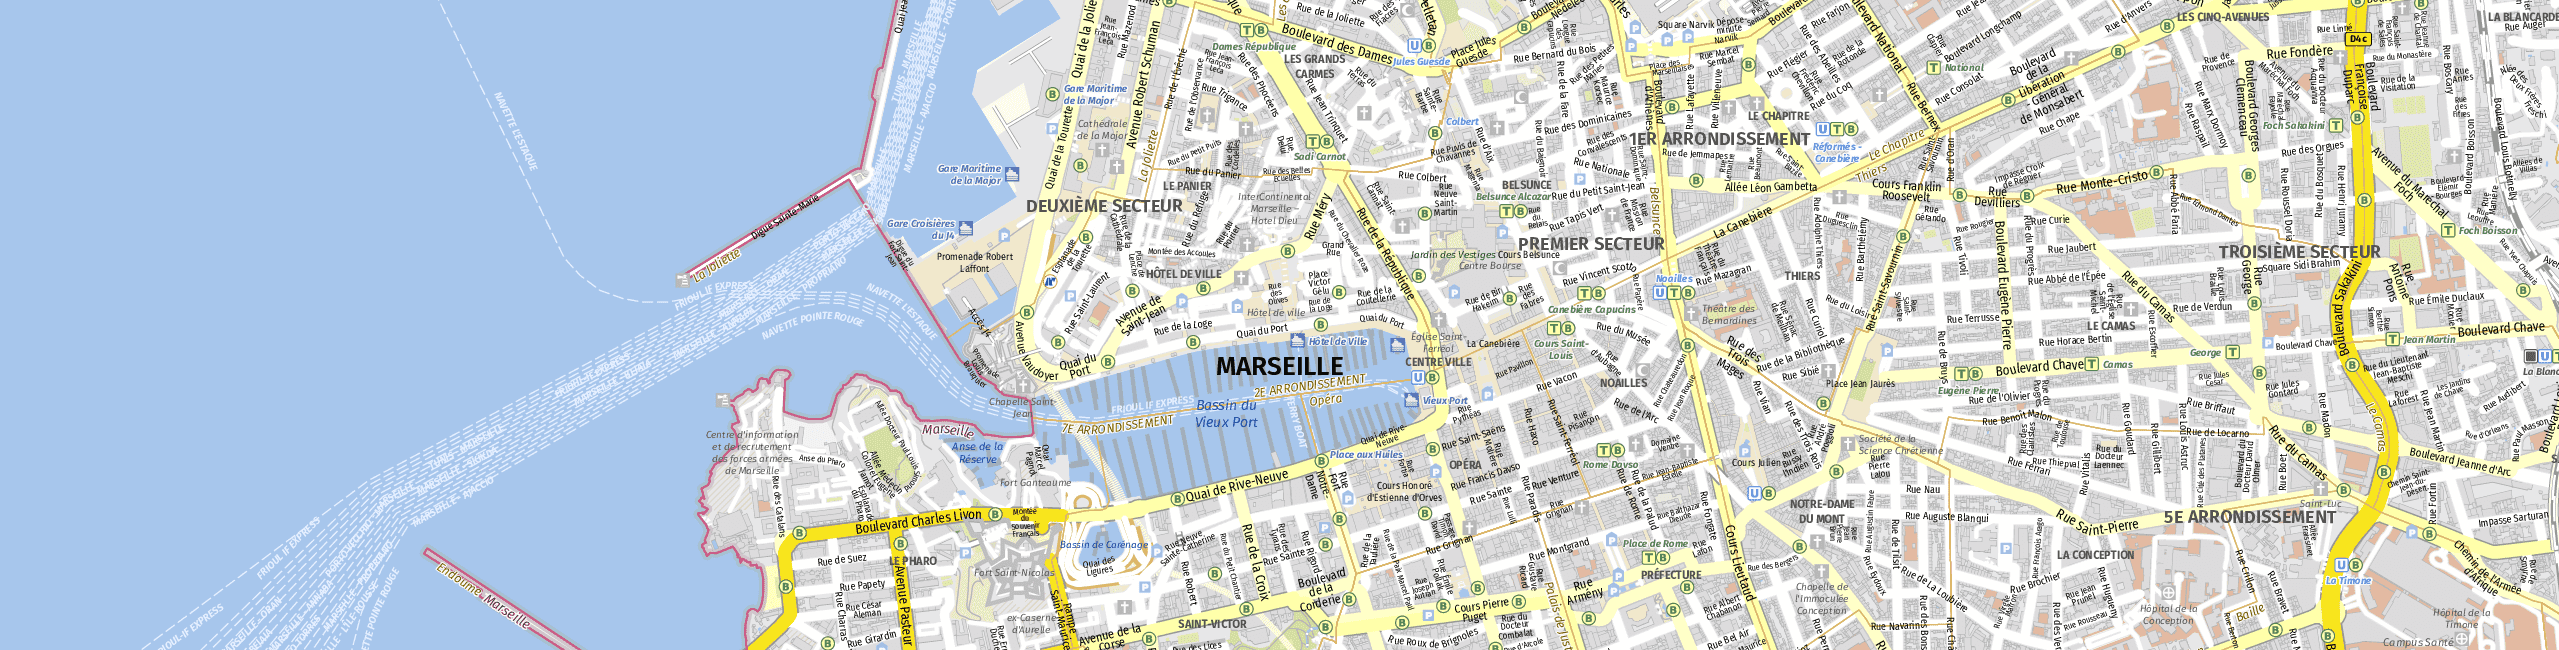 Stadtplan Marseilles zum Downloaden.